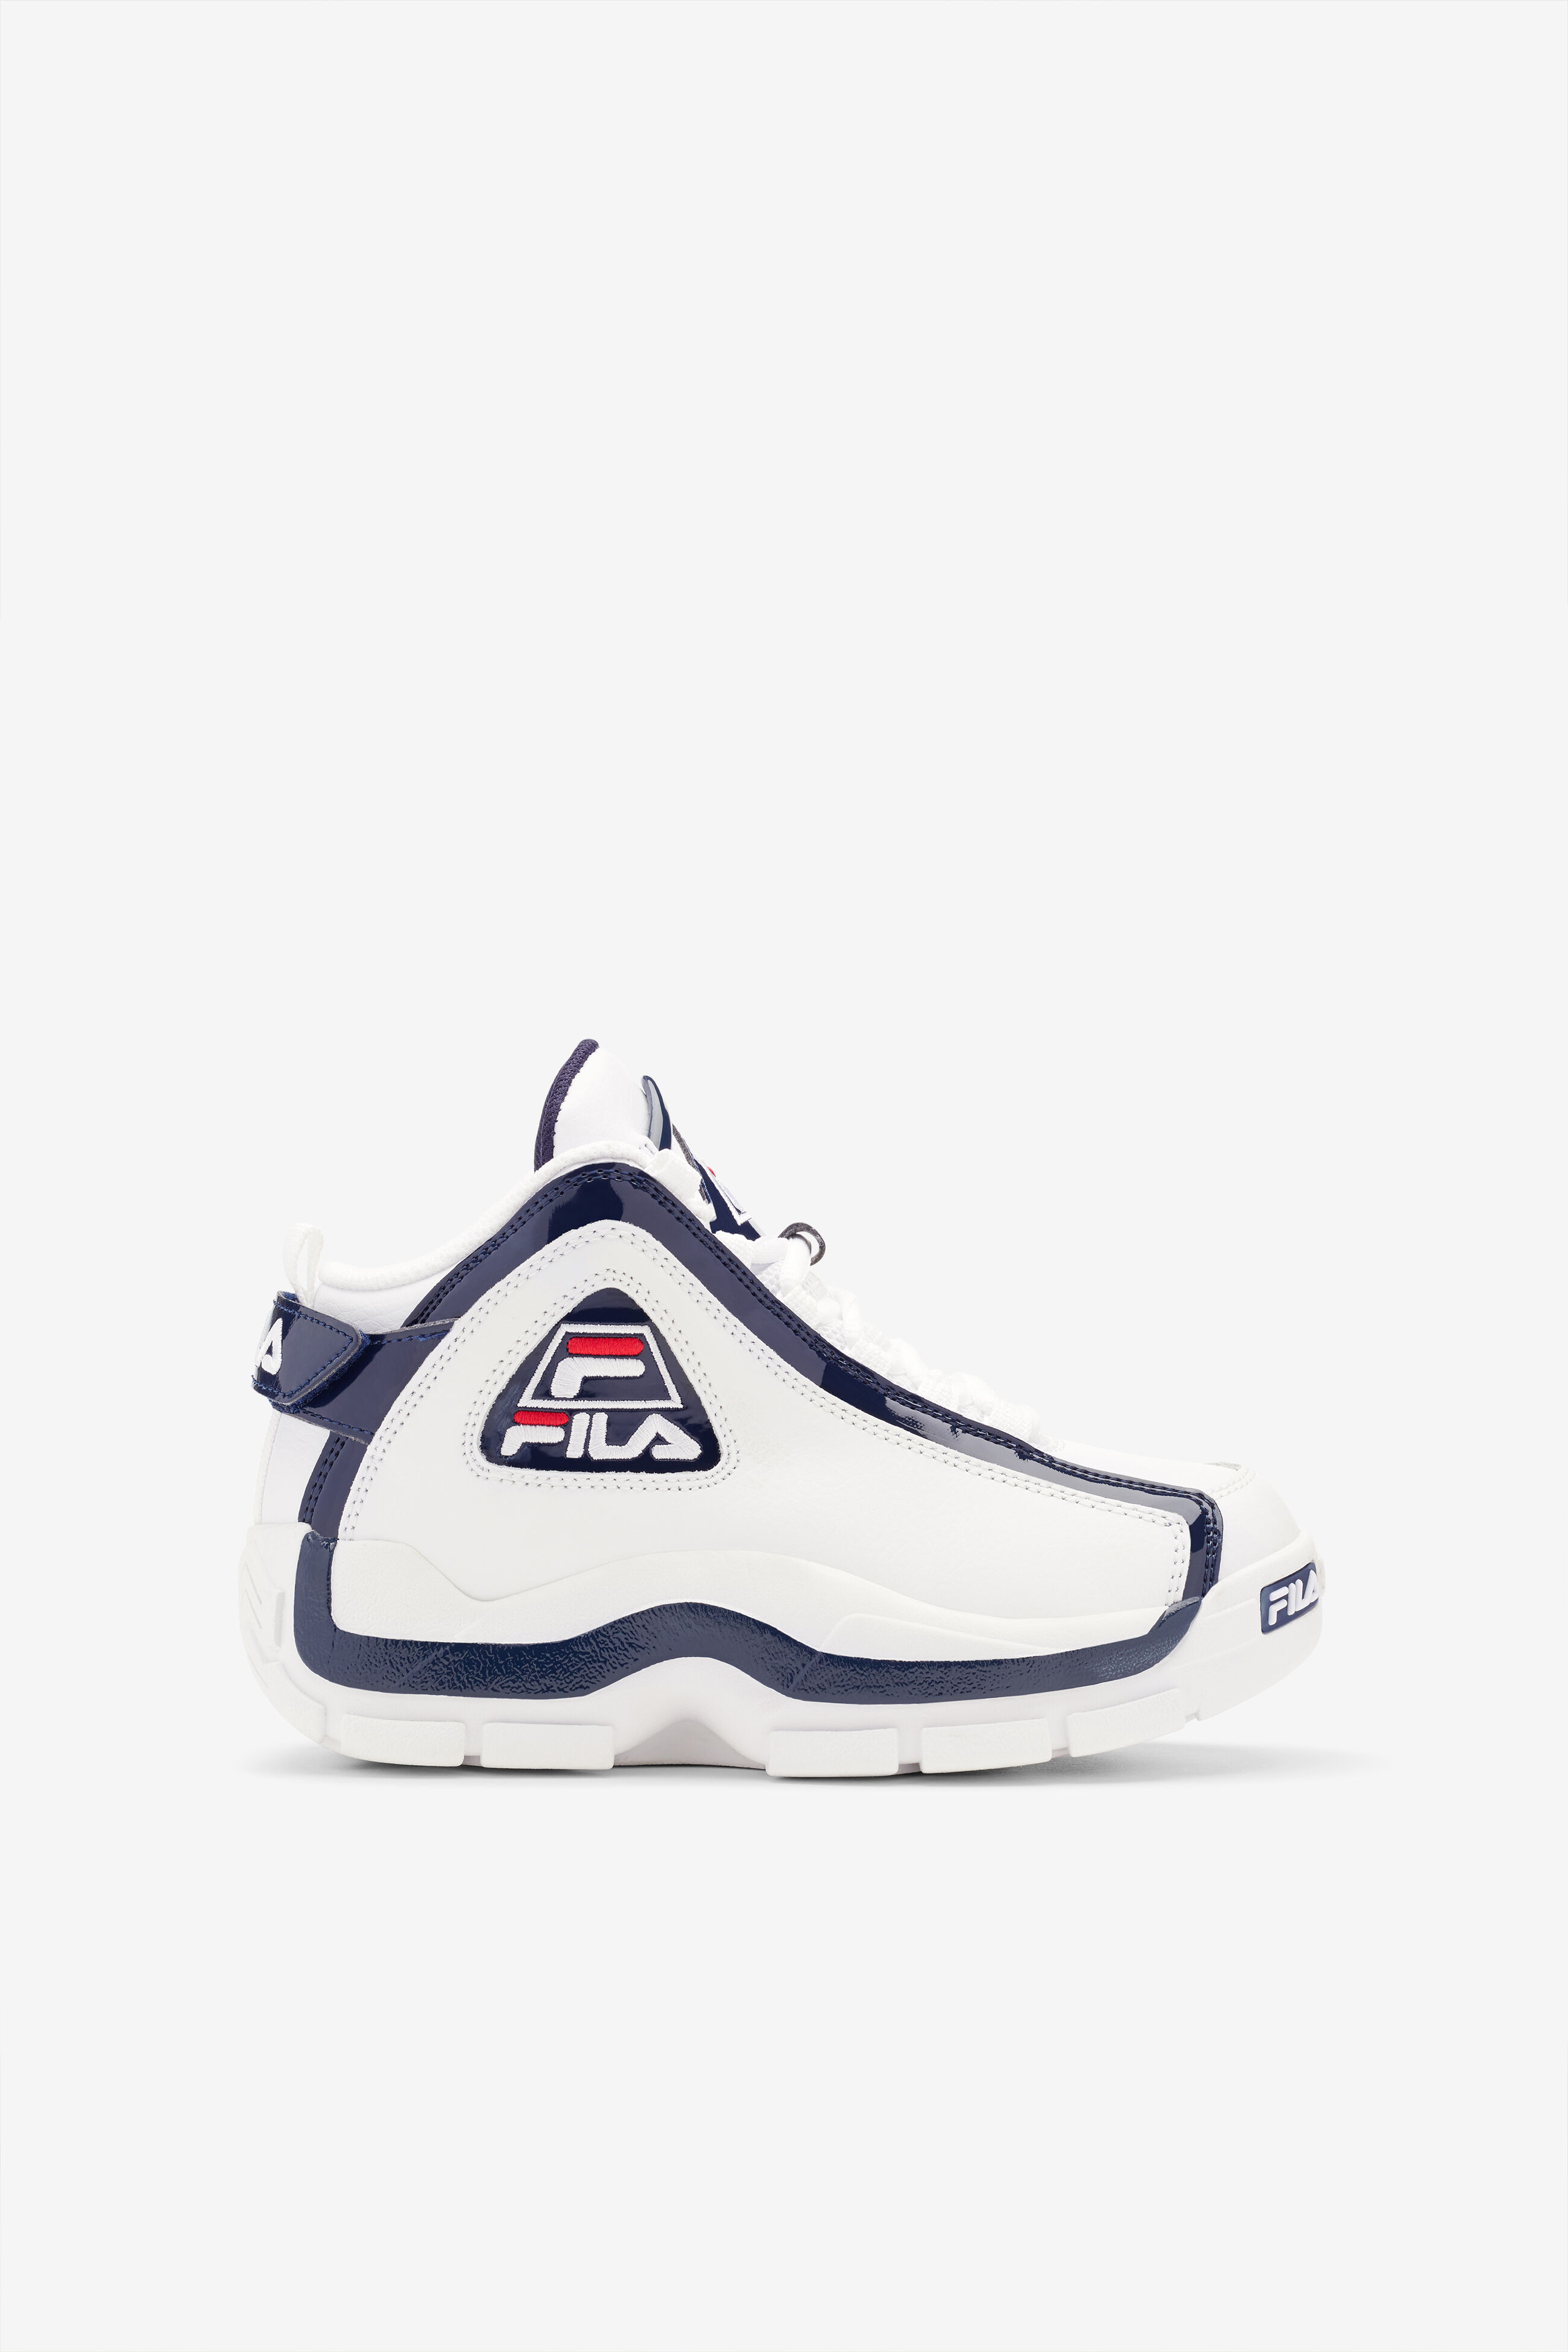 Grant Hill 2 Little Kids' Basketball Shoes | Fila 3BM01163